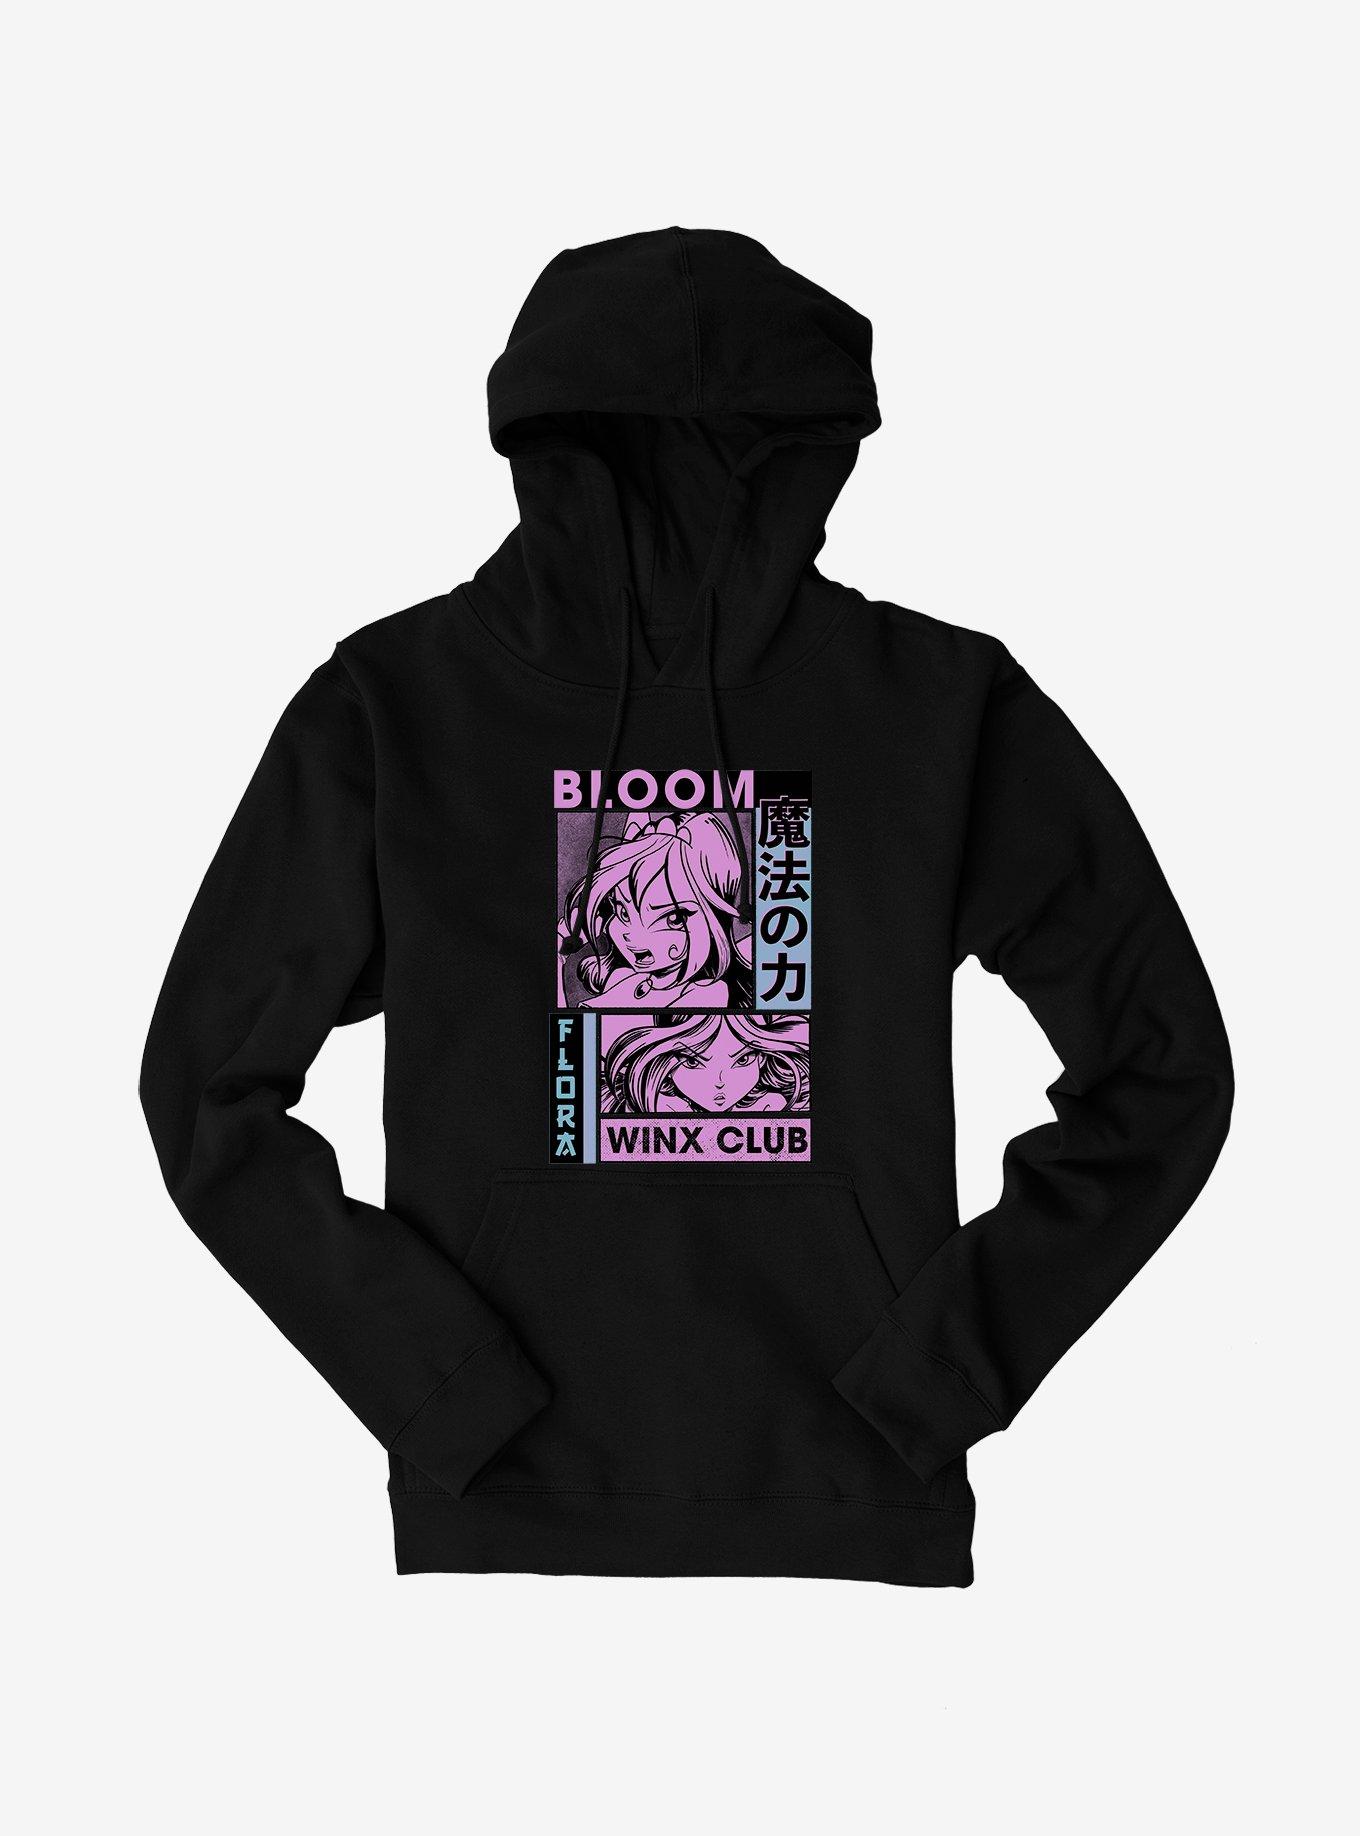 Winx Club Bloom Comic Hoodie - BLACK | Hot Topic